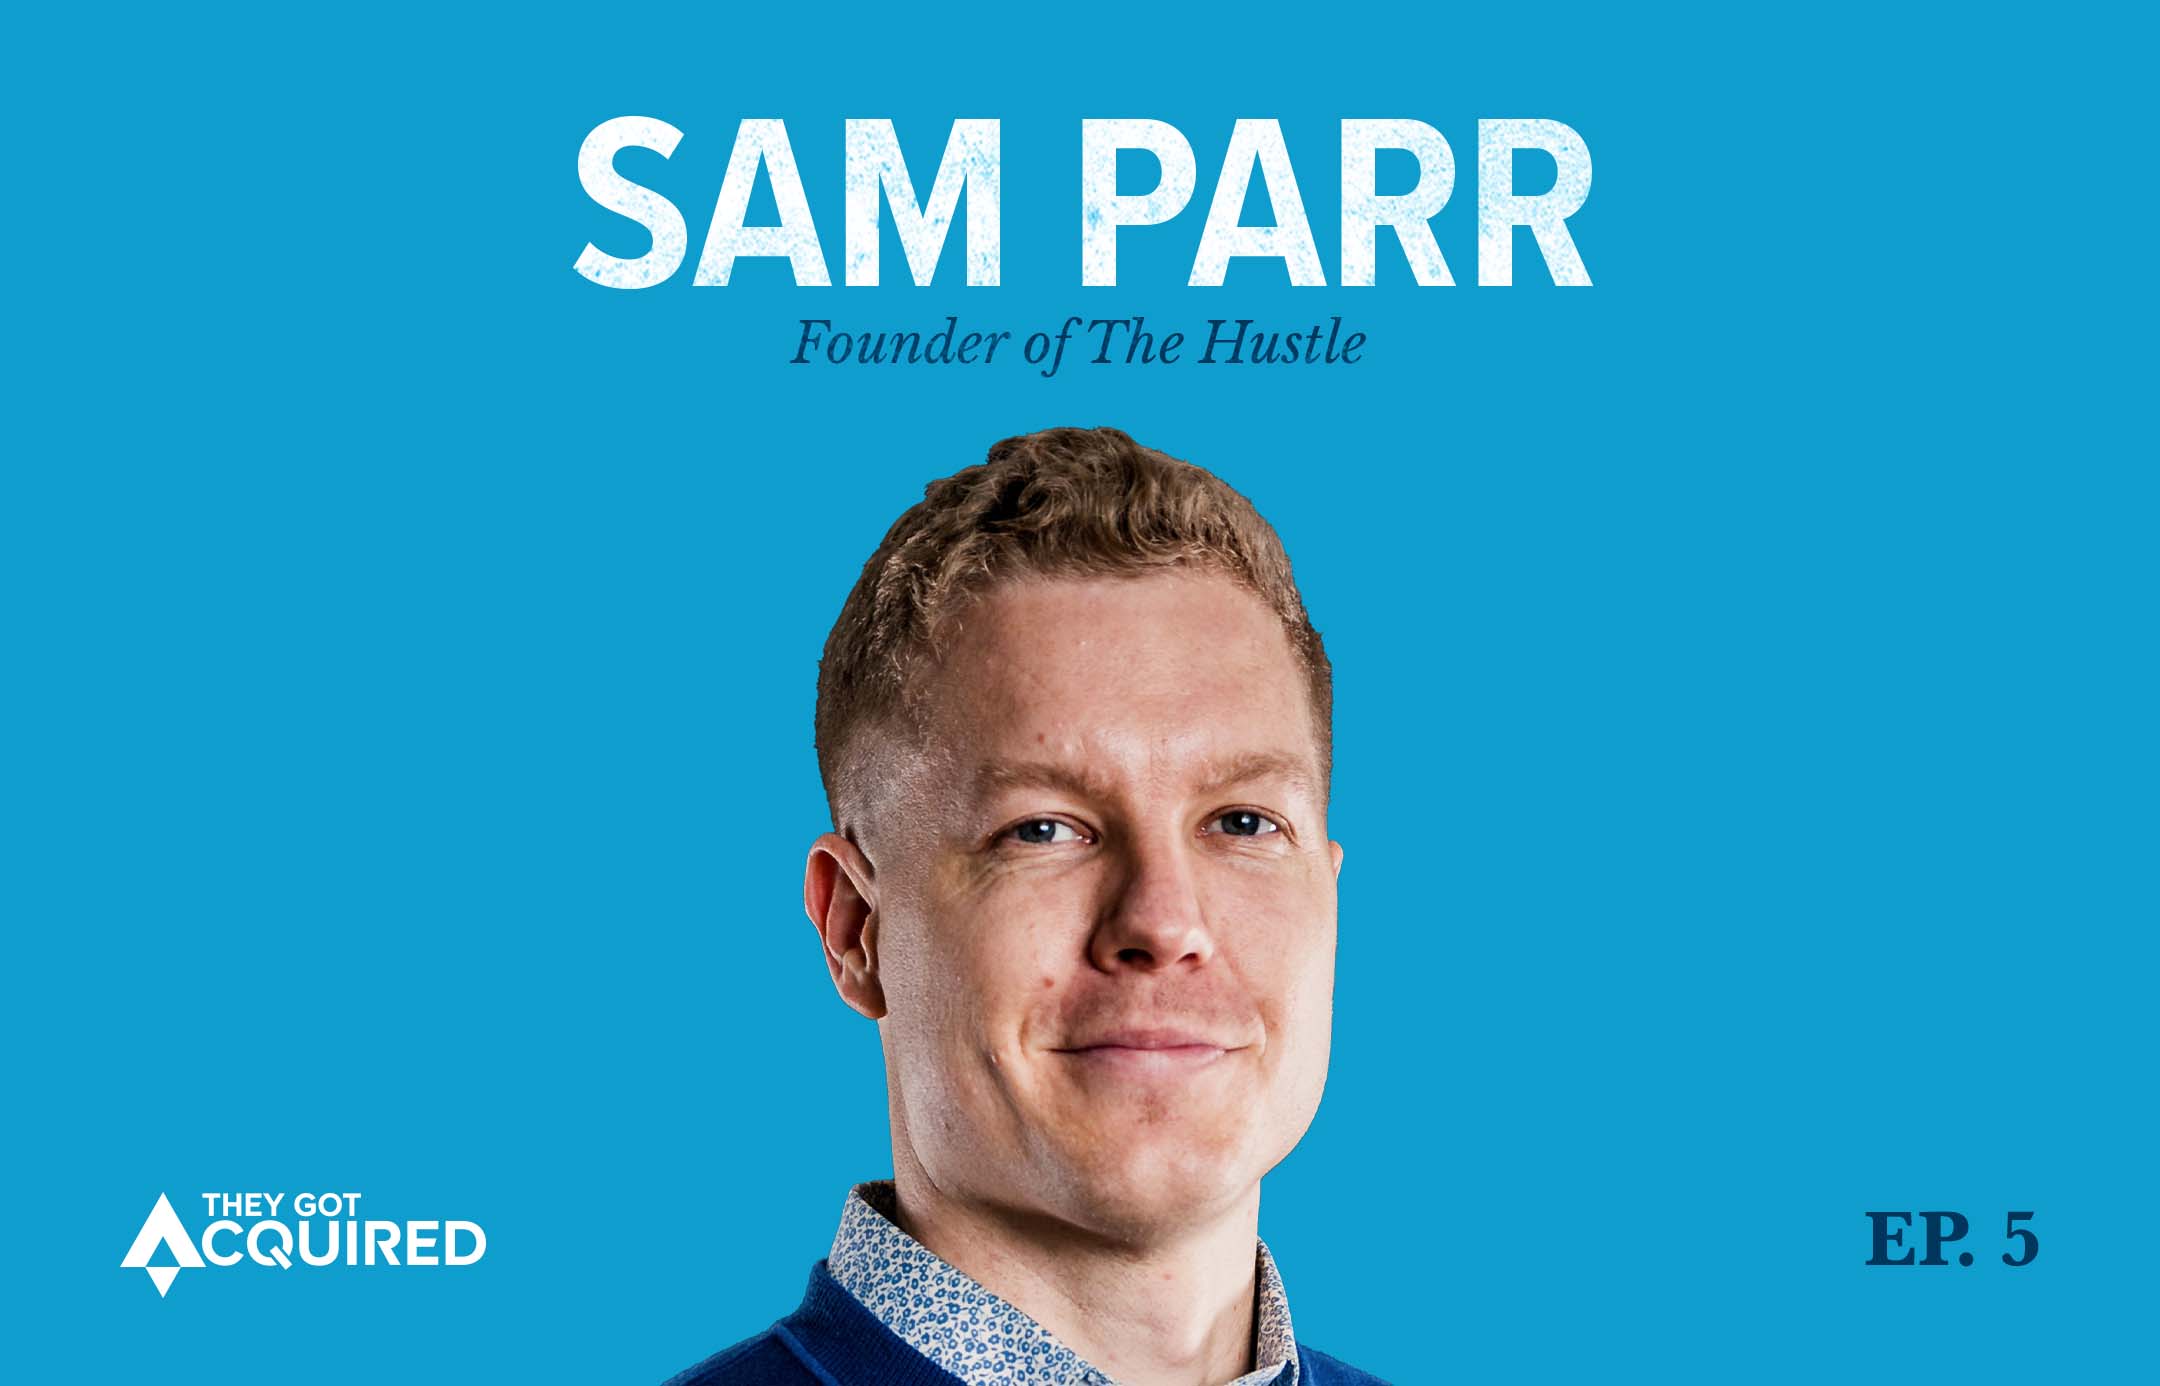 Sam Parr, Founder of The Hustle